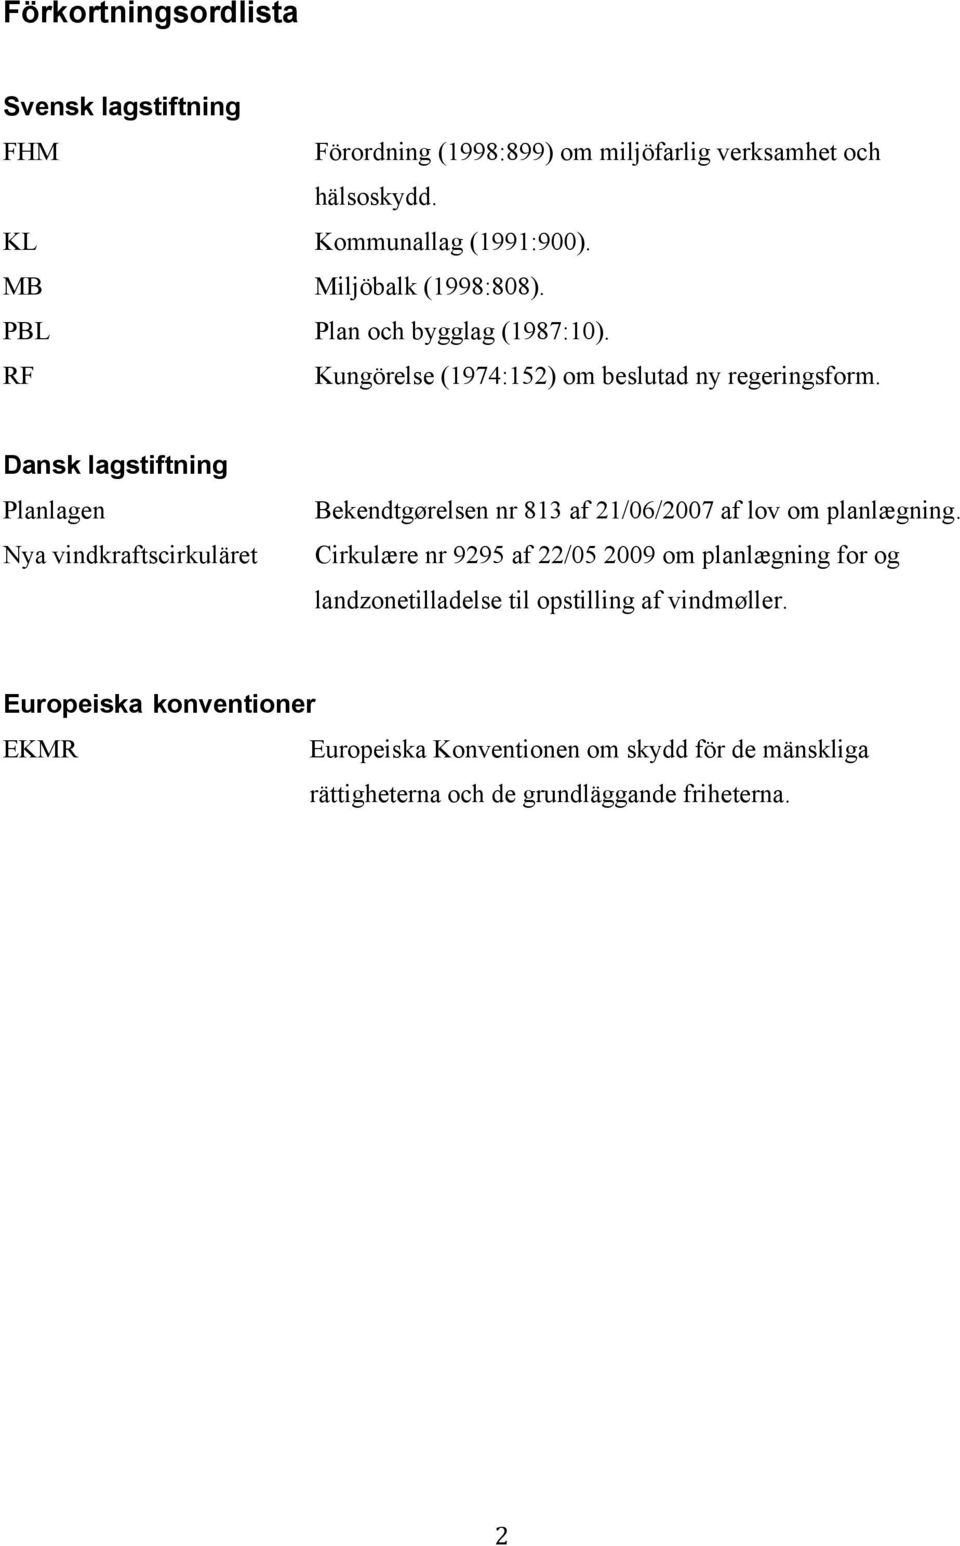 Dansk lagstiftning Planlagen Nya vindkraftscirkuläret Bekendtgørelsen nr 813 af 21/06/2007 af lov om planlægning.